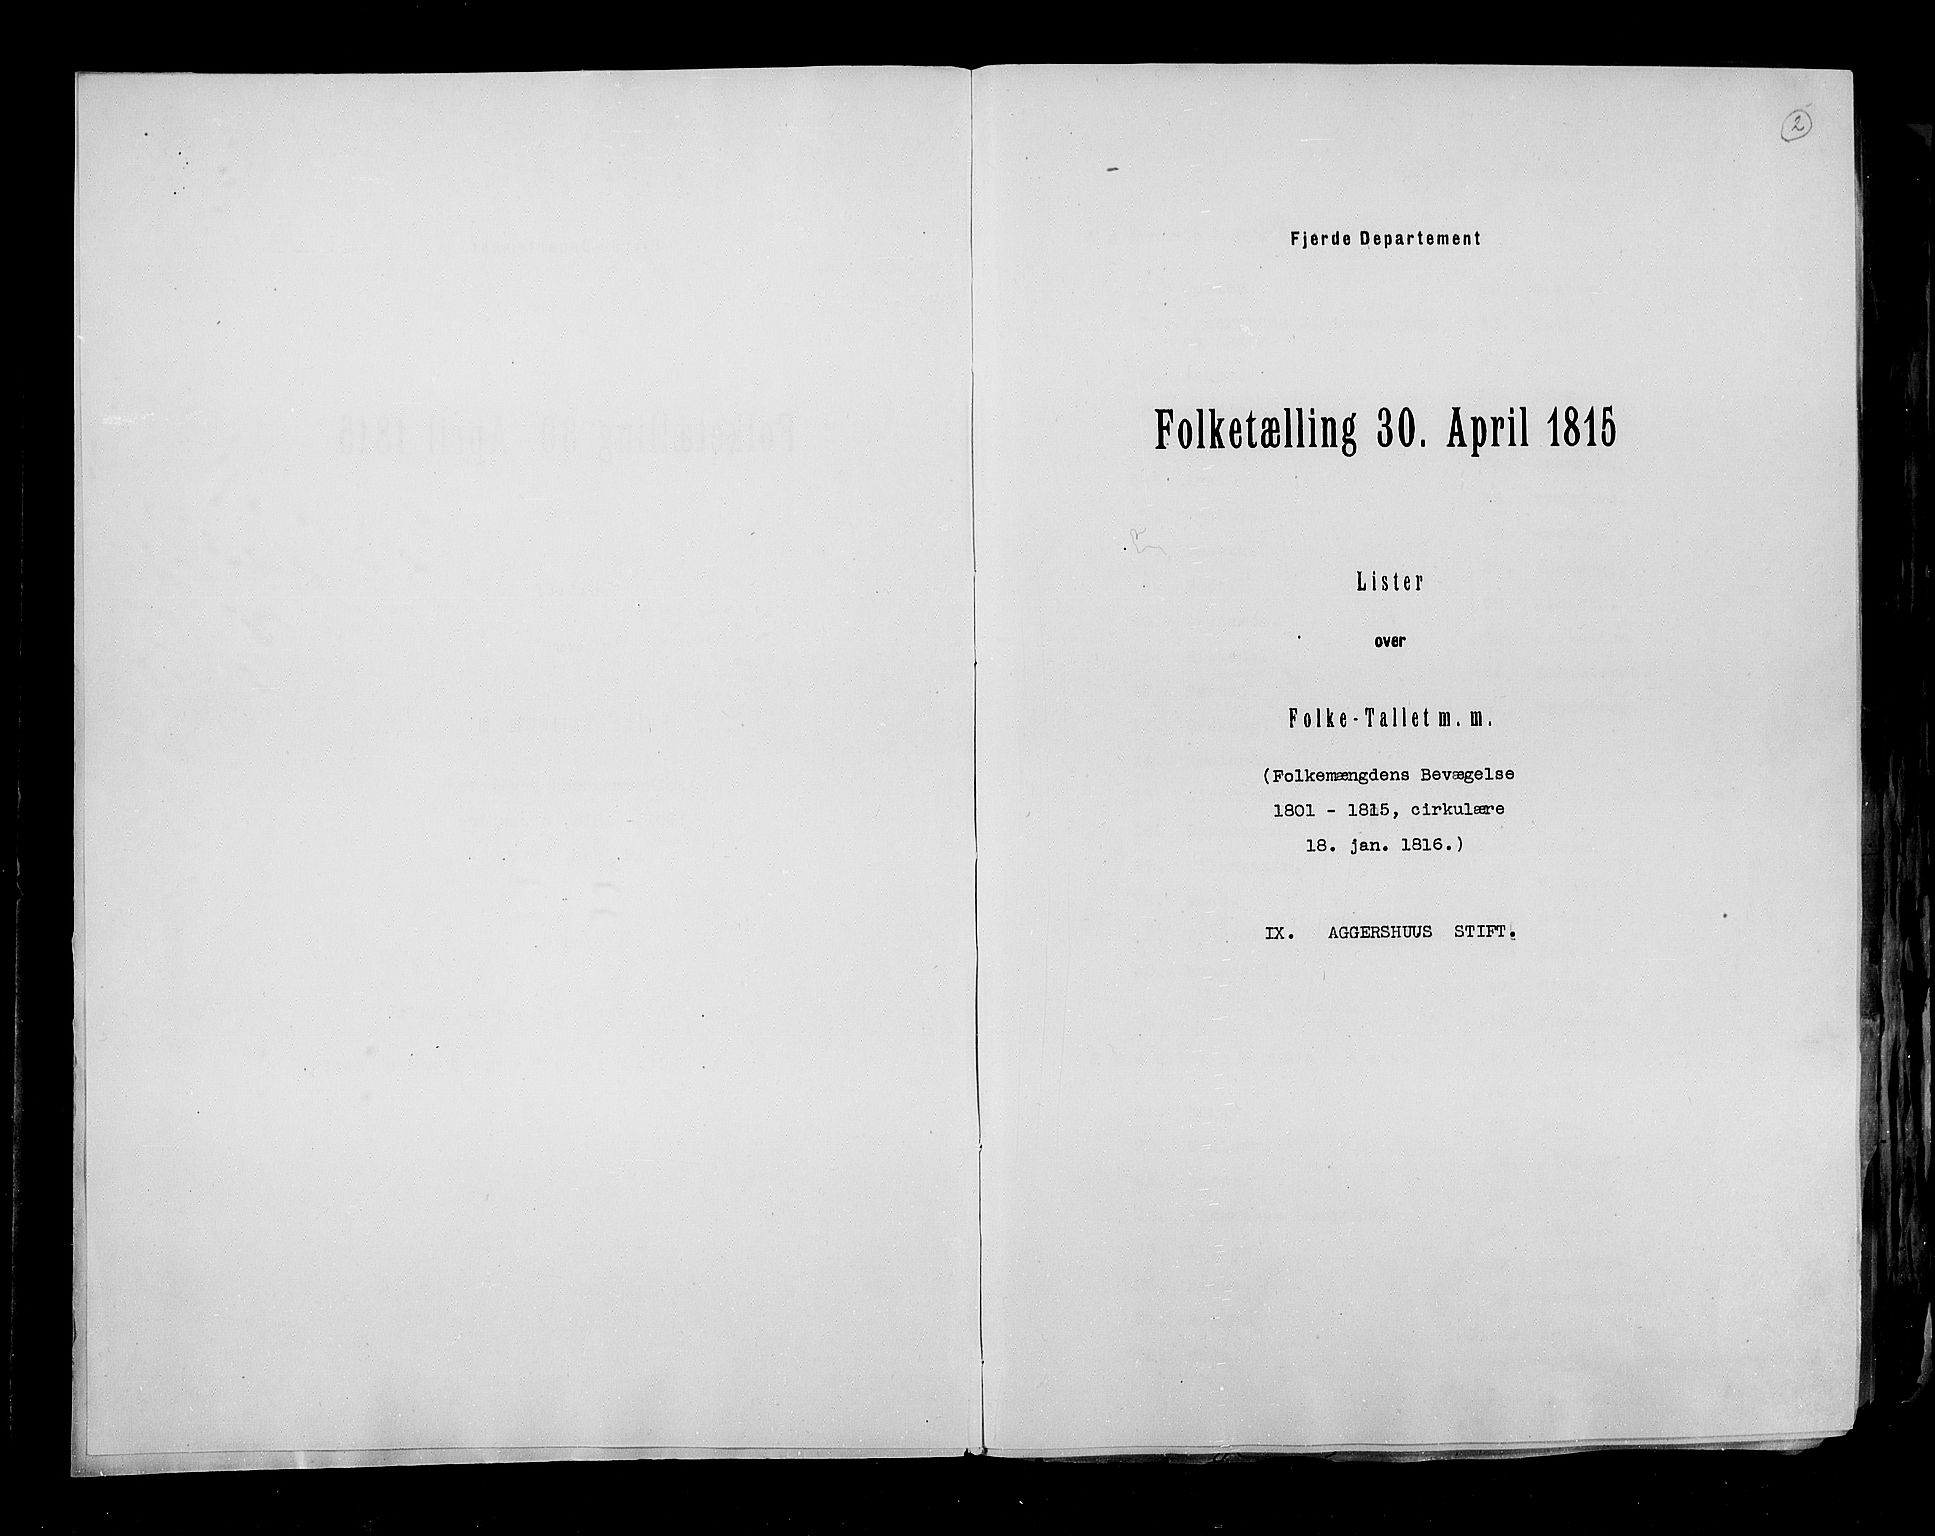 RA, Folketellingen 1815, bind 6: Folkemengdens bevegelse i Akershus stift og Kristiansand stift, 1815, s. 2